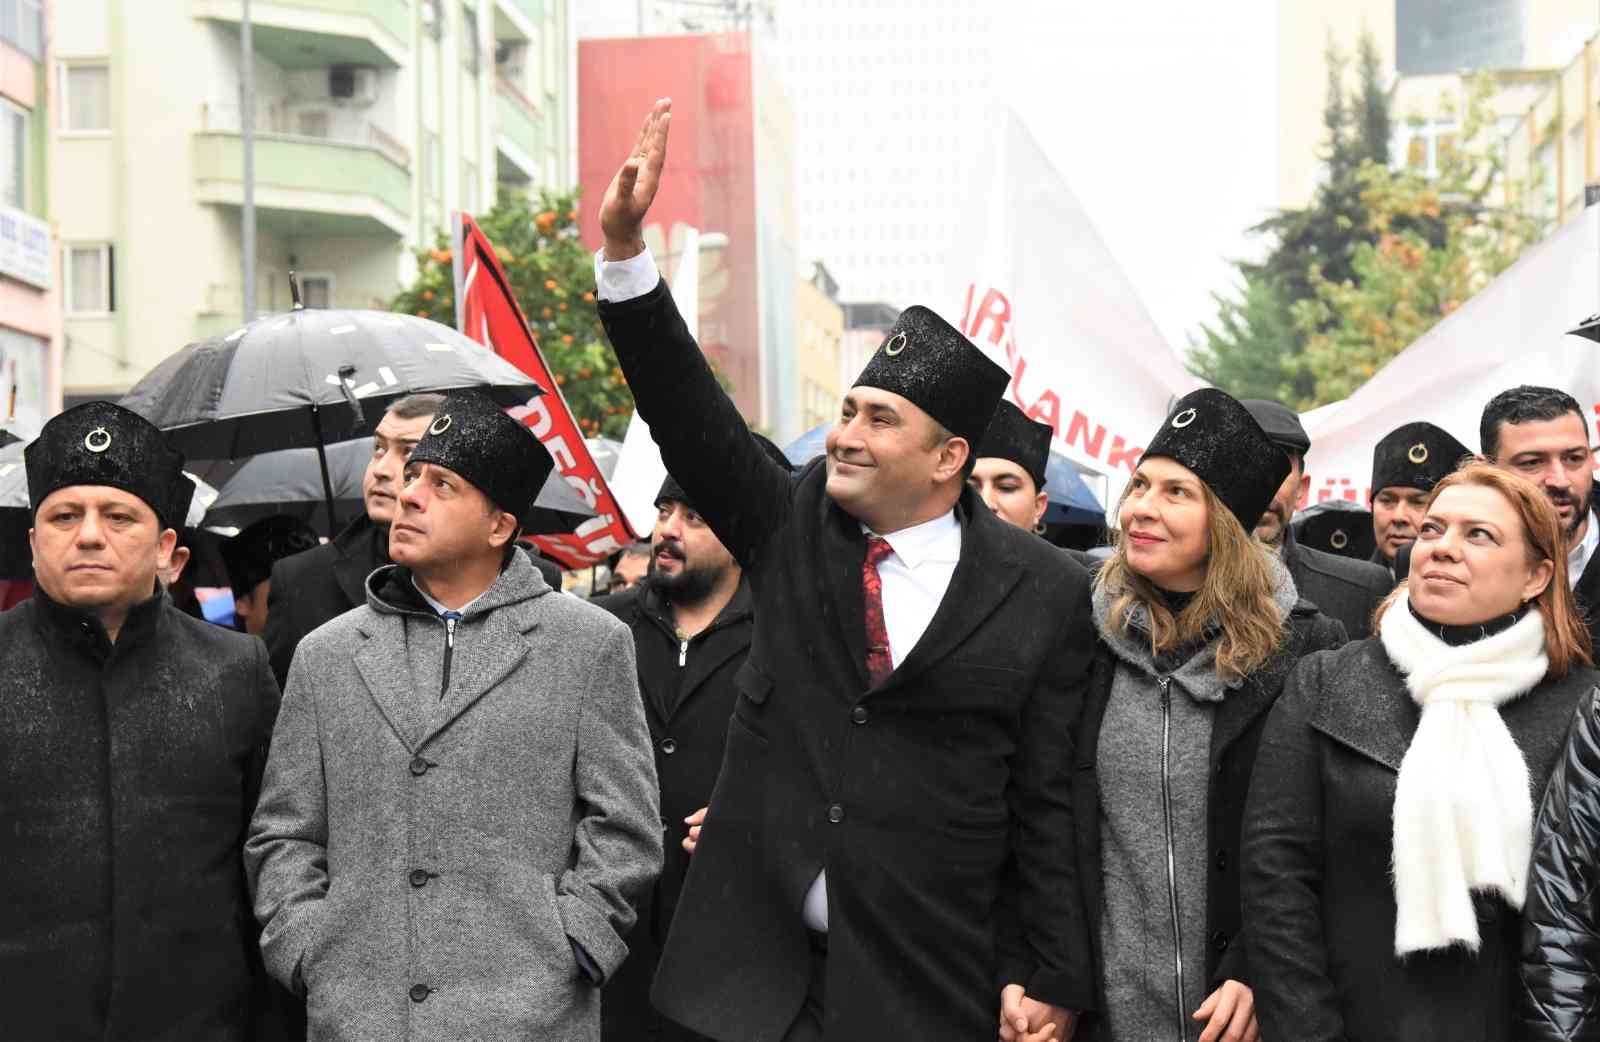 Mersinliler, geleneksel 3 Ocak Zafer Yürüyüşünde buluşacak #mersin